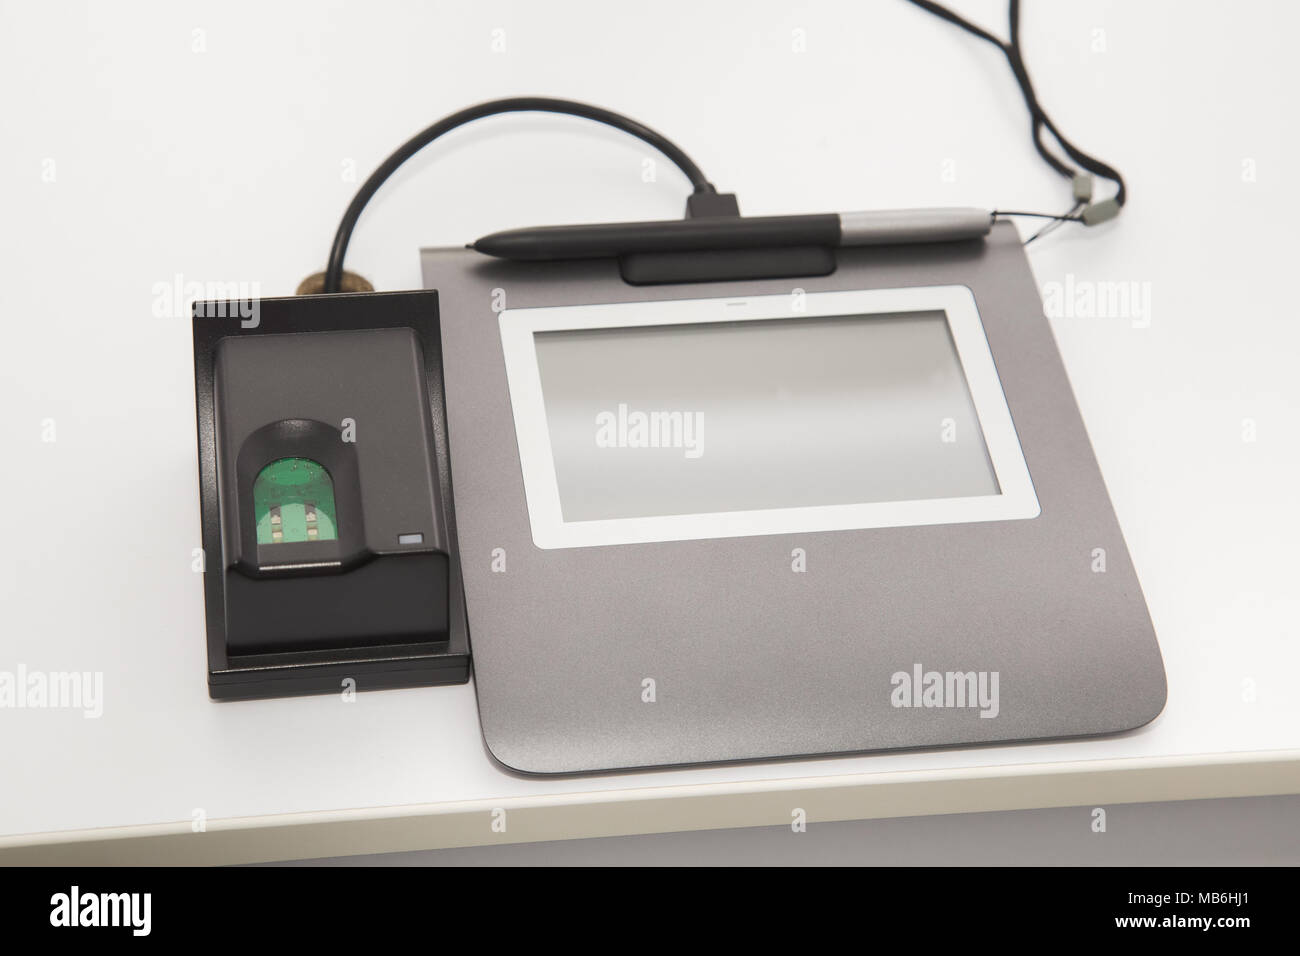 Detailansicht moderner Ausrüstung für das Scannen von Fingerabdrücken und Schreiben digitale Signatur für biometrische ID-Karte. Stockfoto